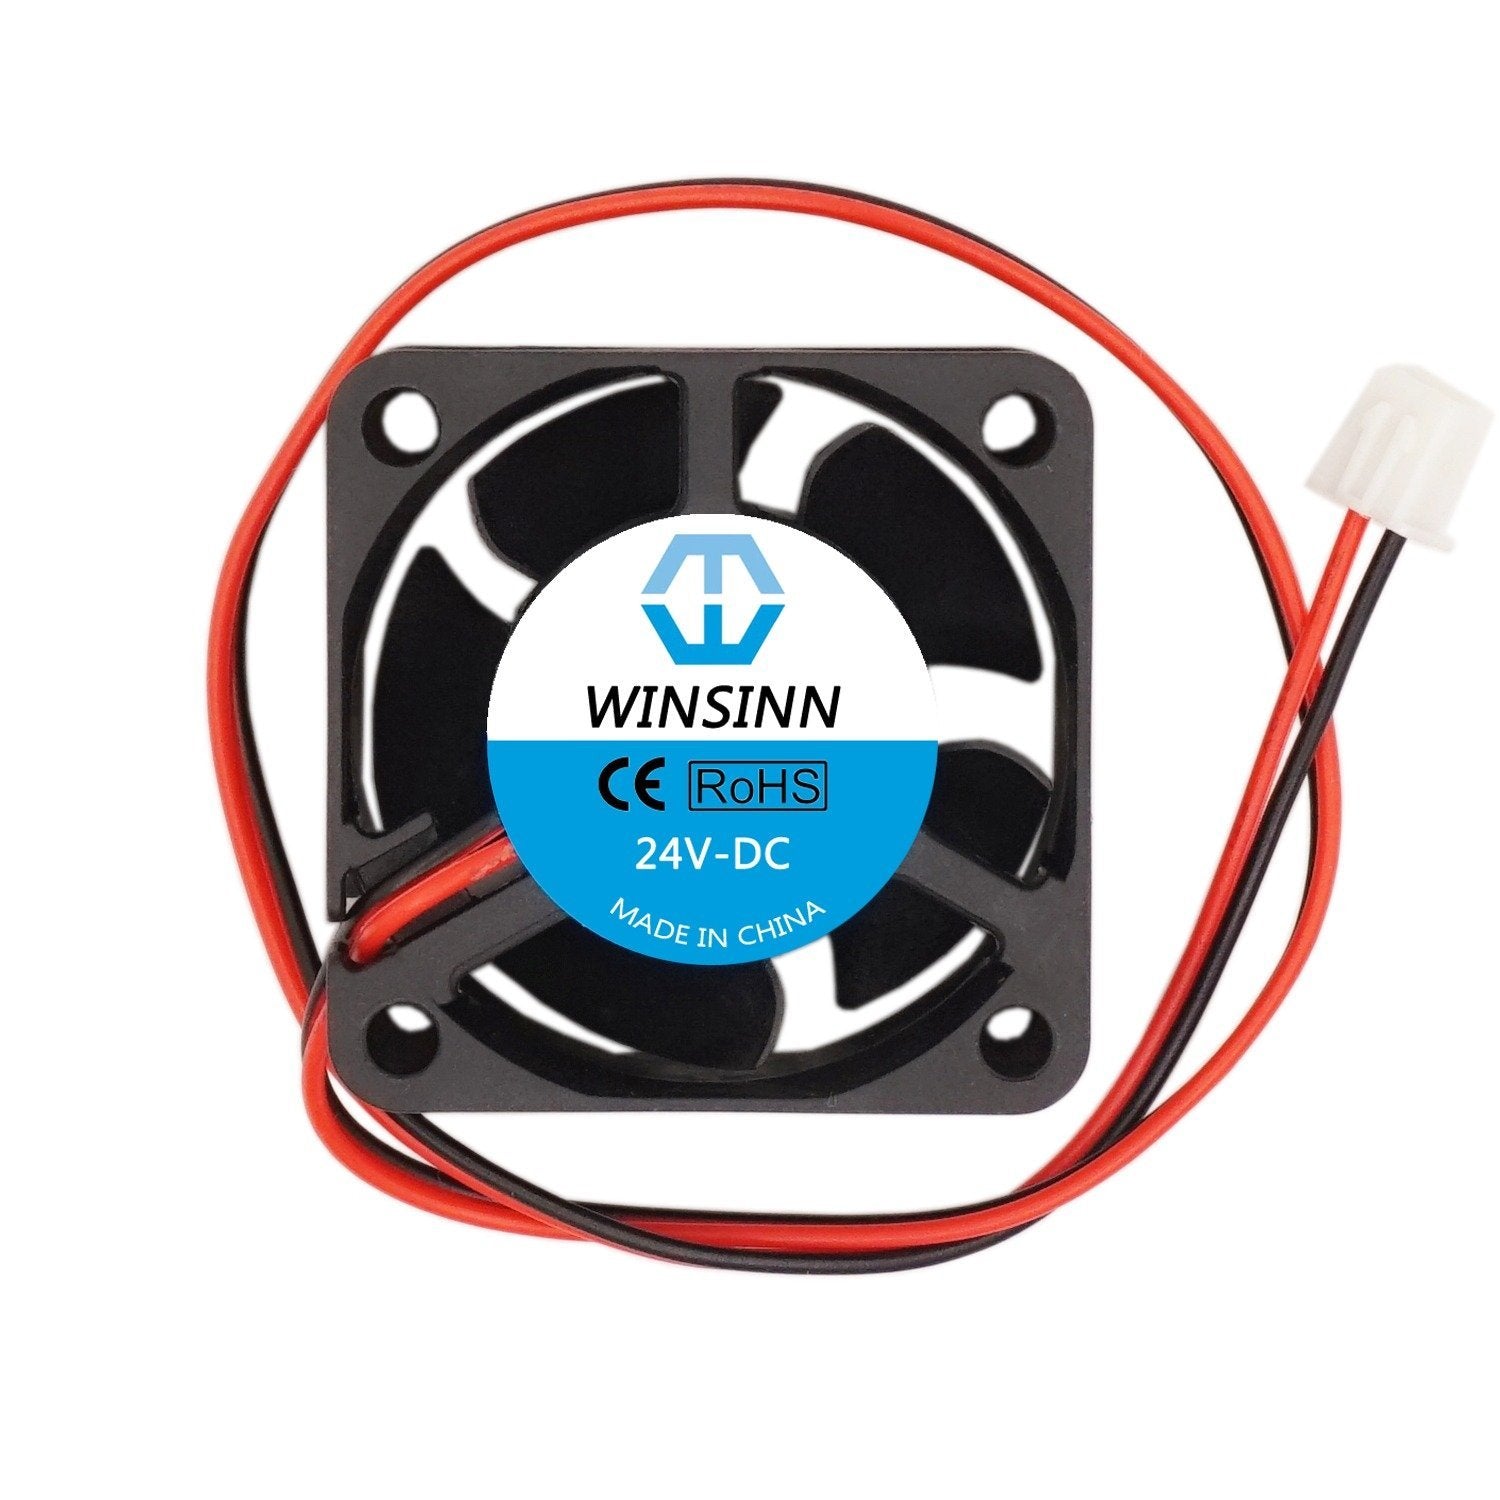 WINSINN 50mm 24V Brushless Fan 5010 (50x10mm) - High Speed Version